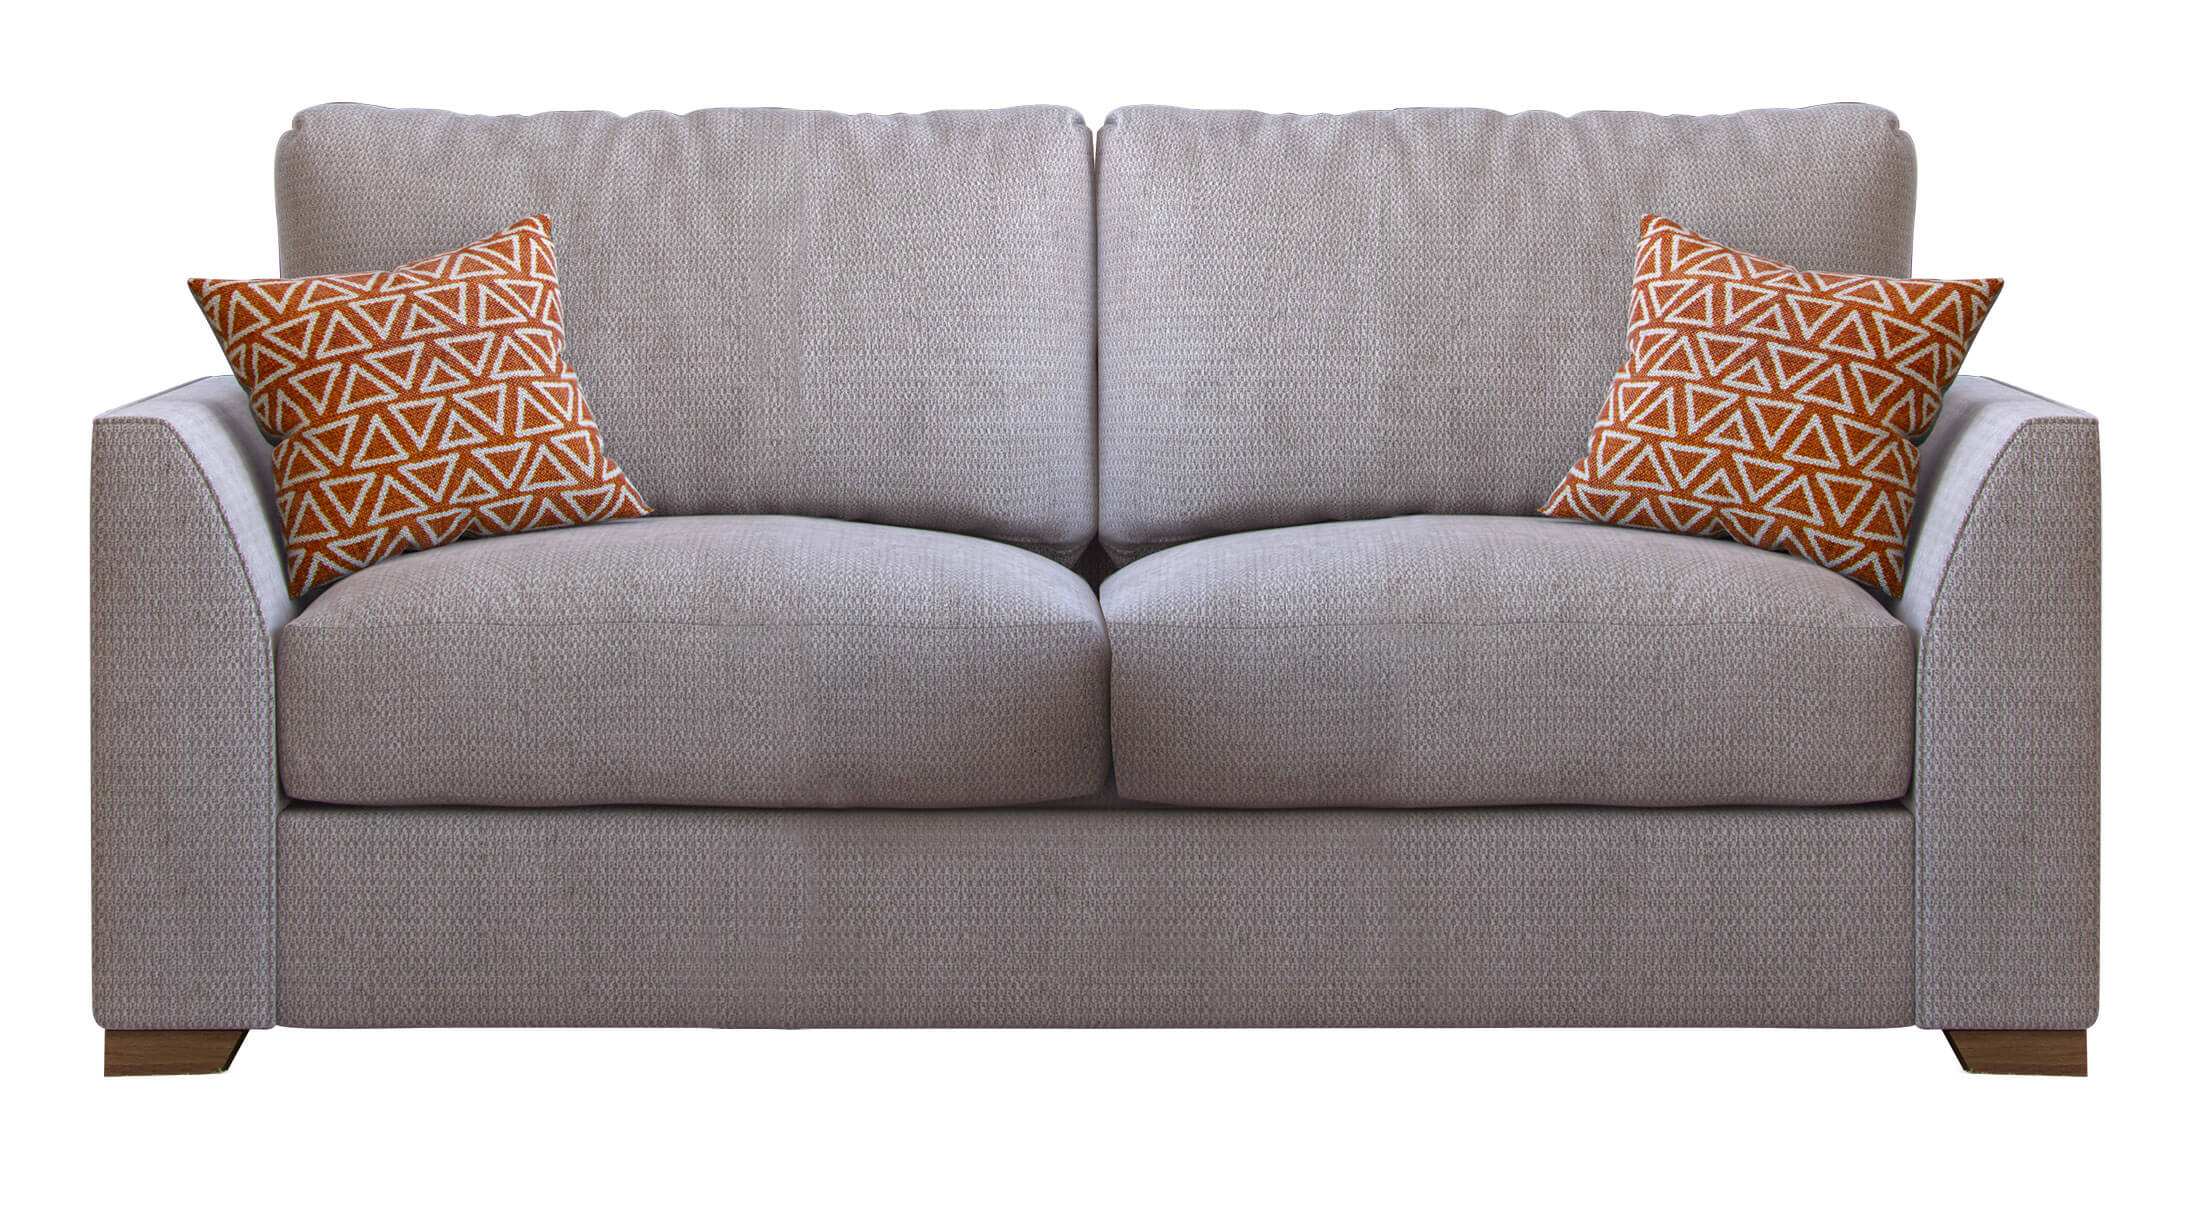 Showing image for Kalika 2-seater sofa